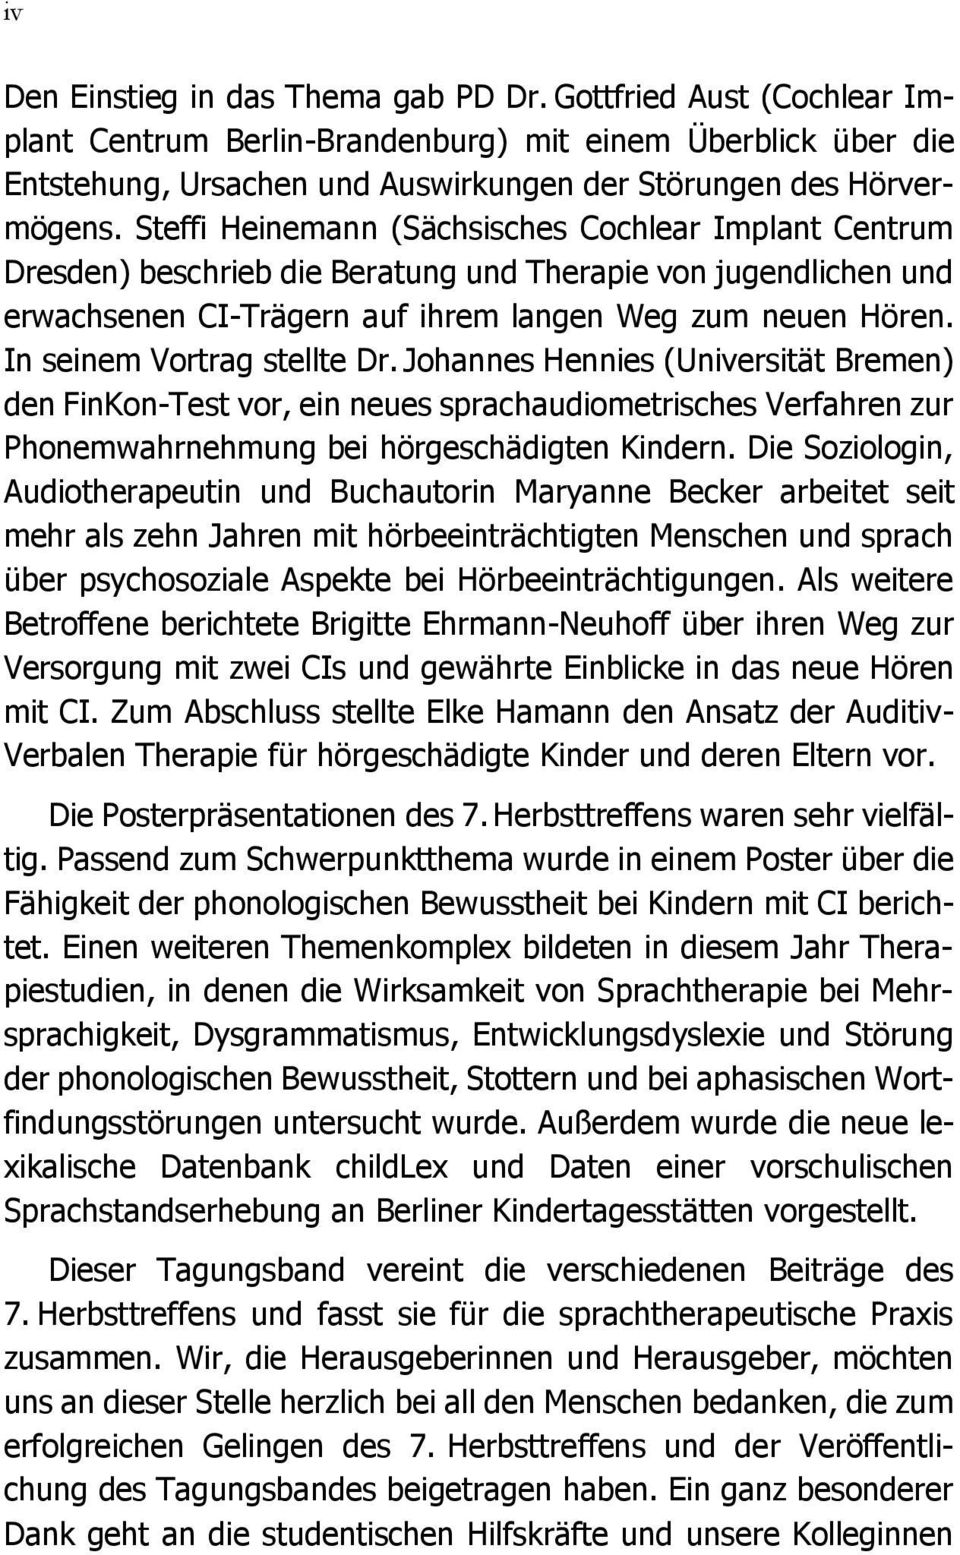 In seinem Vortrag stellte Dr. Johannes Hennies (Universität Bremen) den FinKon-Test vor, ein neues sprachaudiometrisches Verfahren zur Phonemwahrnehmung bei hörgeschädigten Kindern.